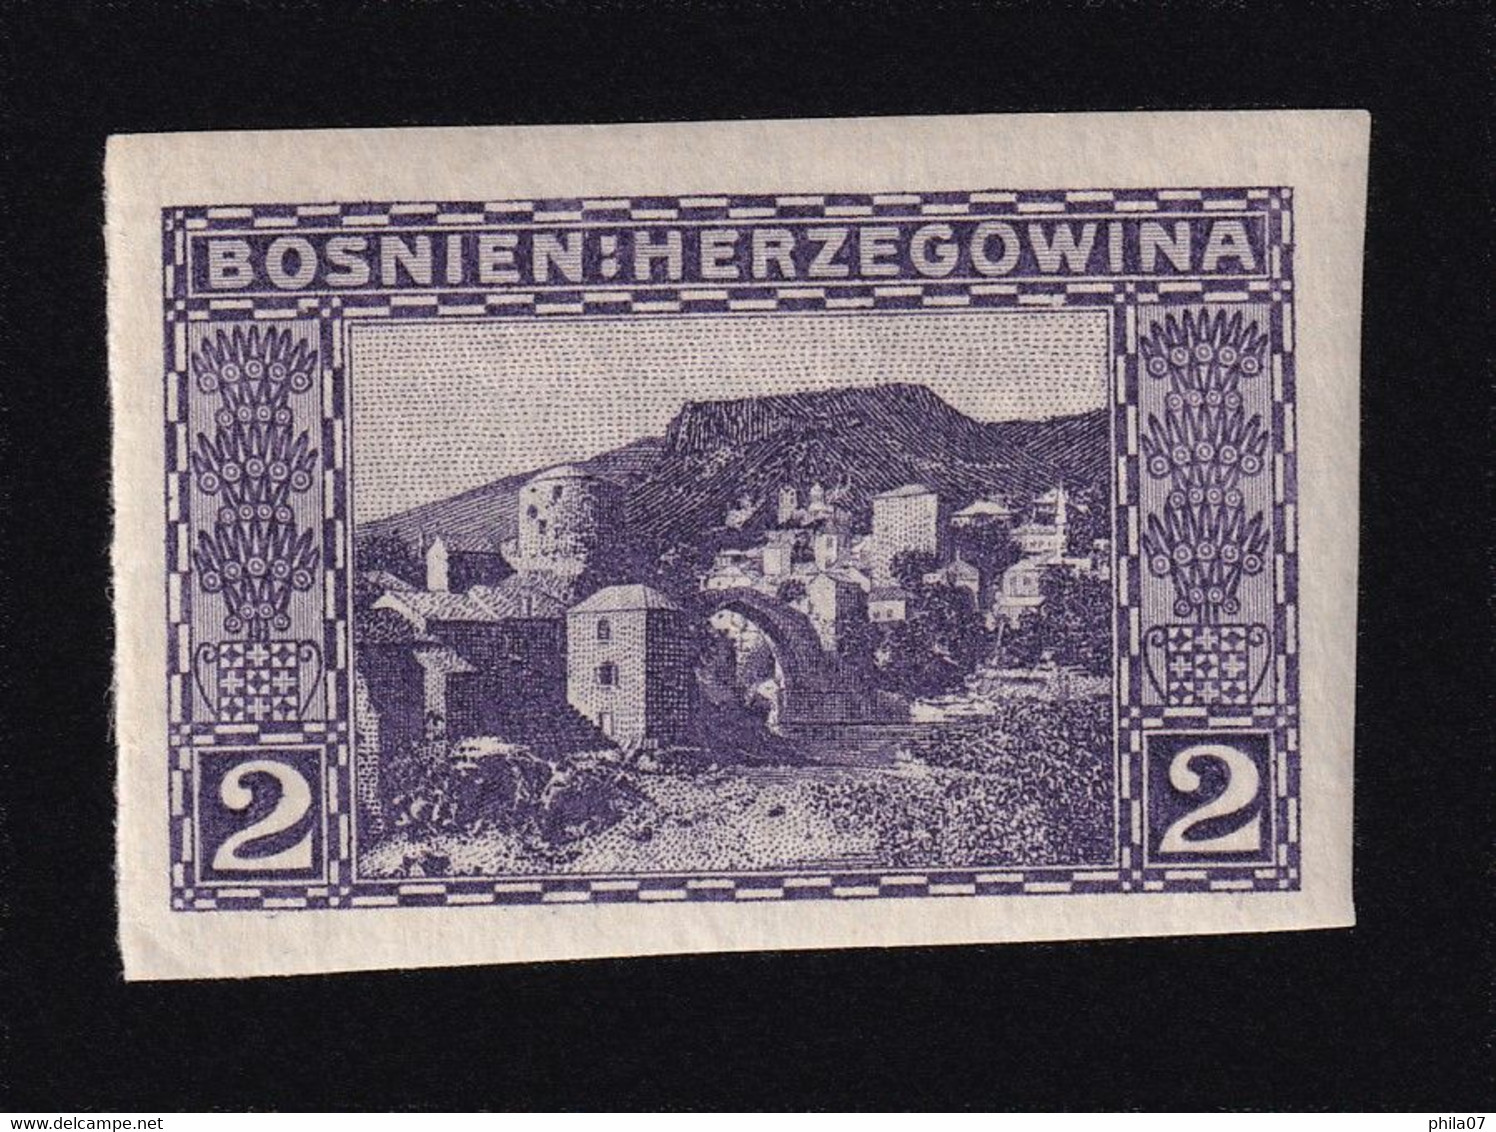 BOSNIA AND HERZEGOVINA - Landscape Stamp 2 Heller, Imperforate Stamp, MH - Bosnie-Herzegovine